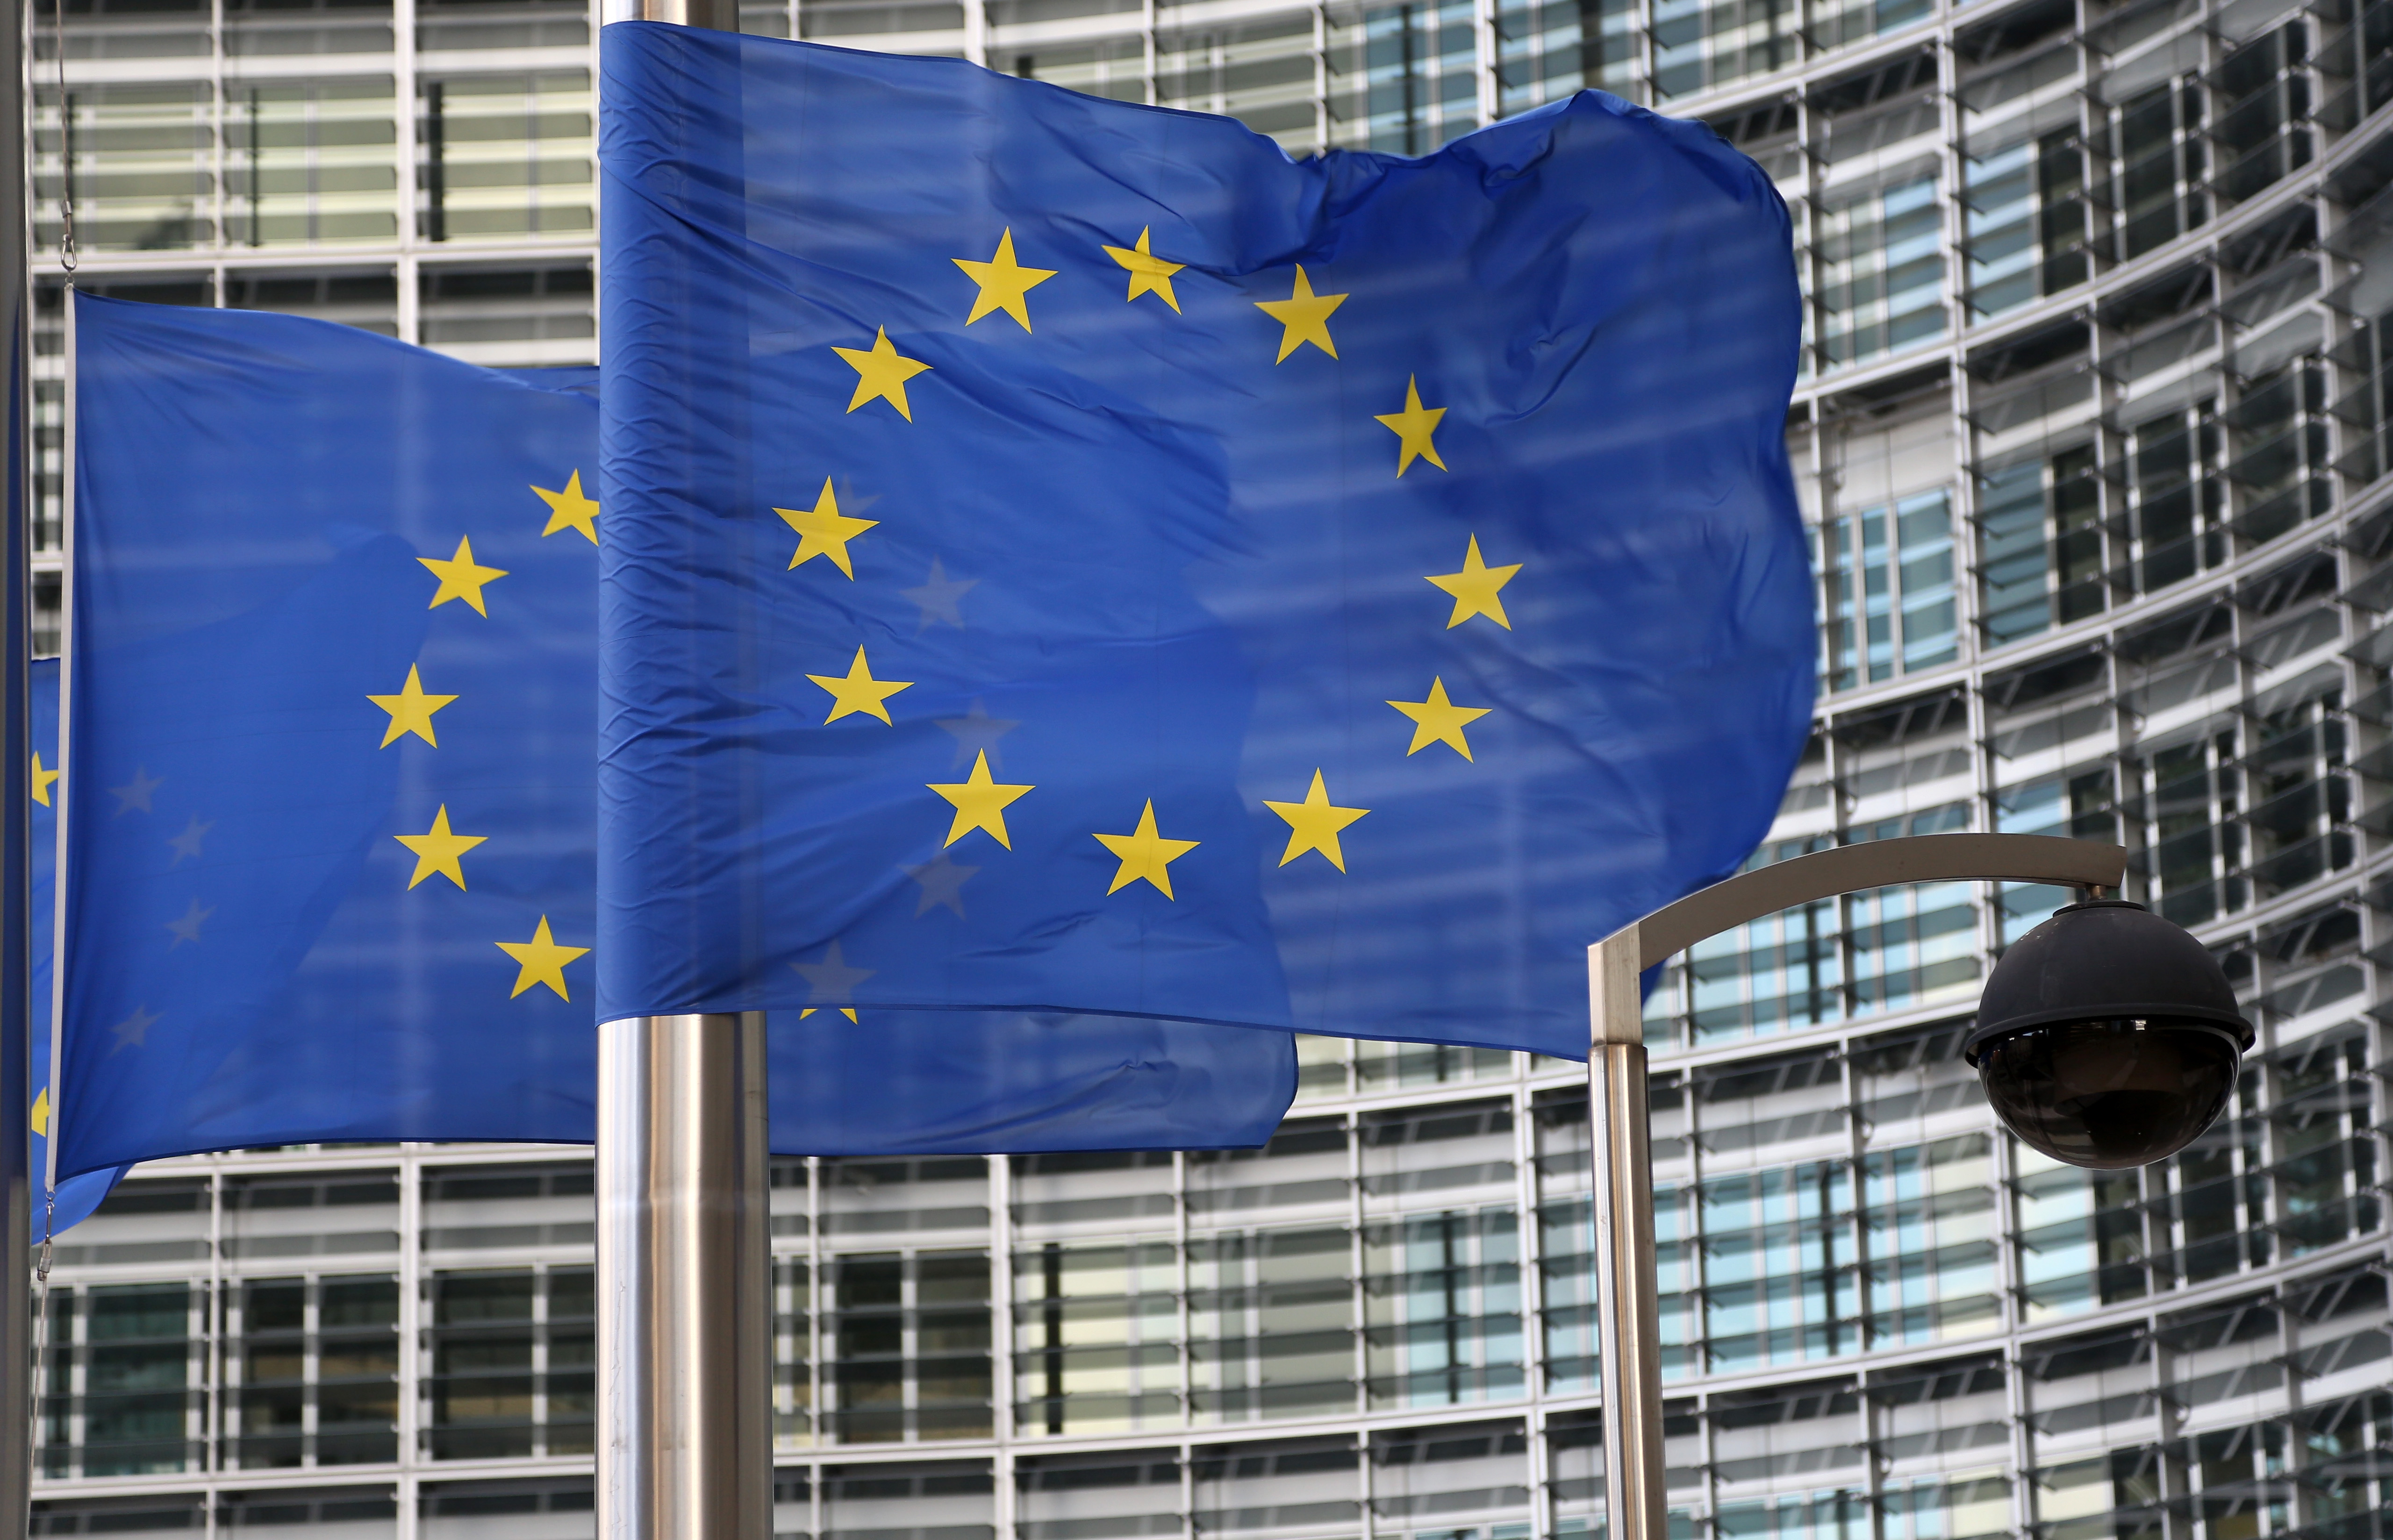 Comisia Europeană, despre cazul Dănileț: ”Urmărim cu o serioasă îngrijorare măsurile disciplinare”